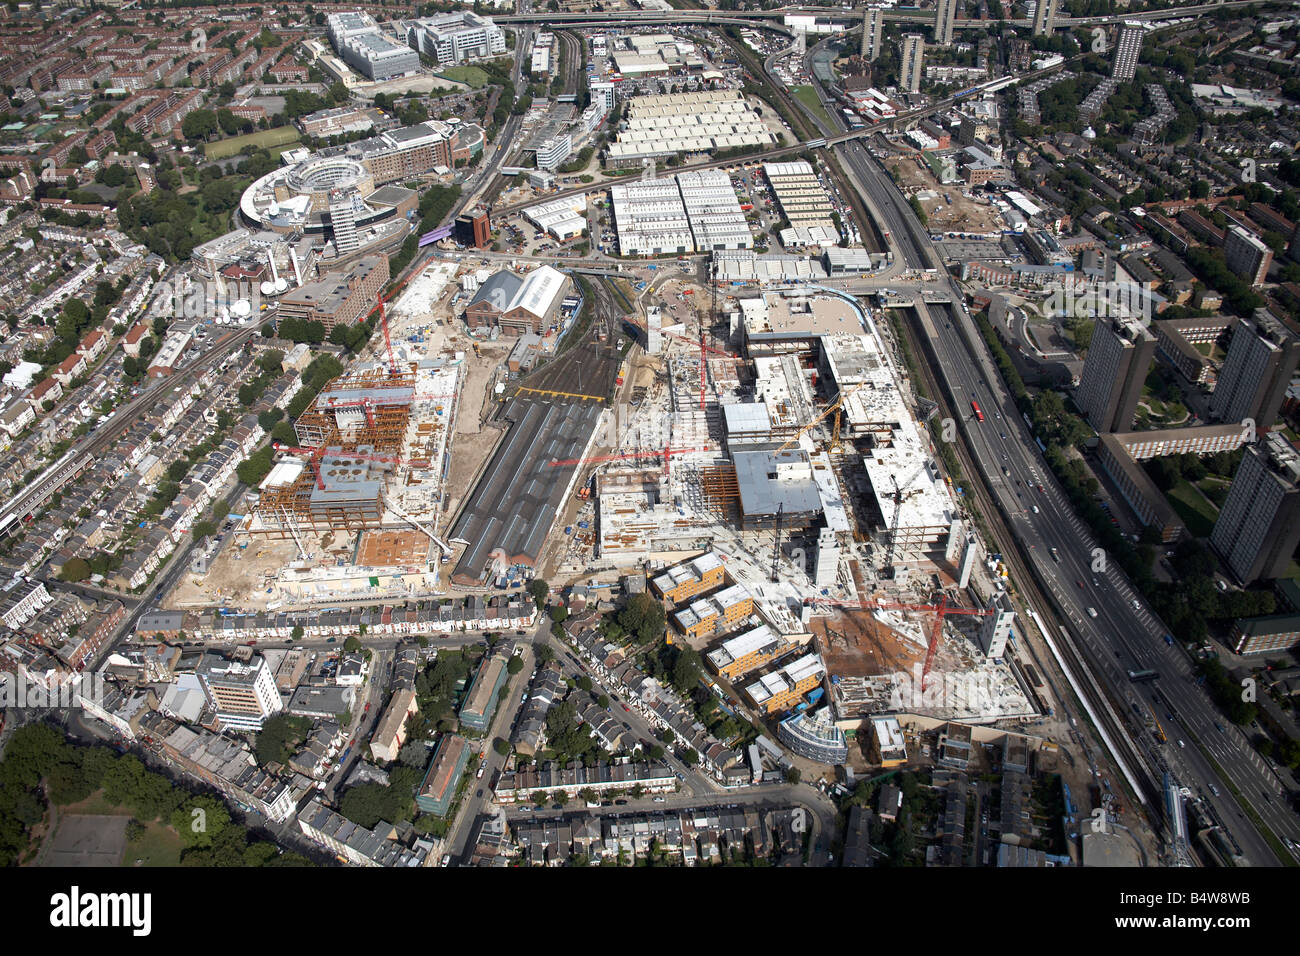 Vue aérienne au nord de la ville blanche de Westfield Site Construction Développement BBC Television Centre West Cross Vélo Londres W12 W11 UK Banque D'Images